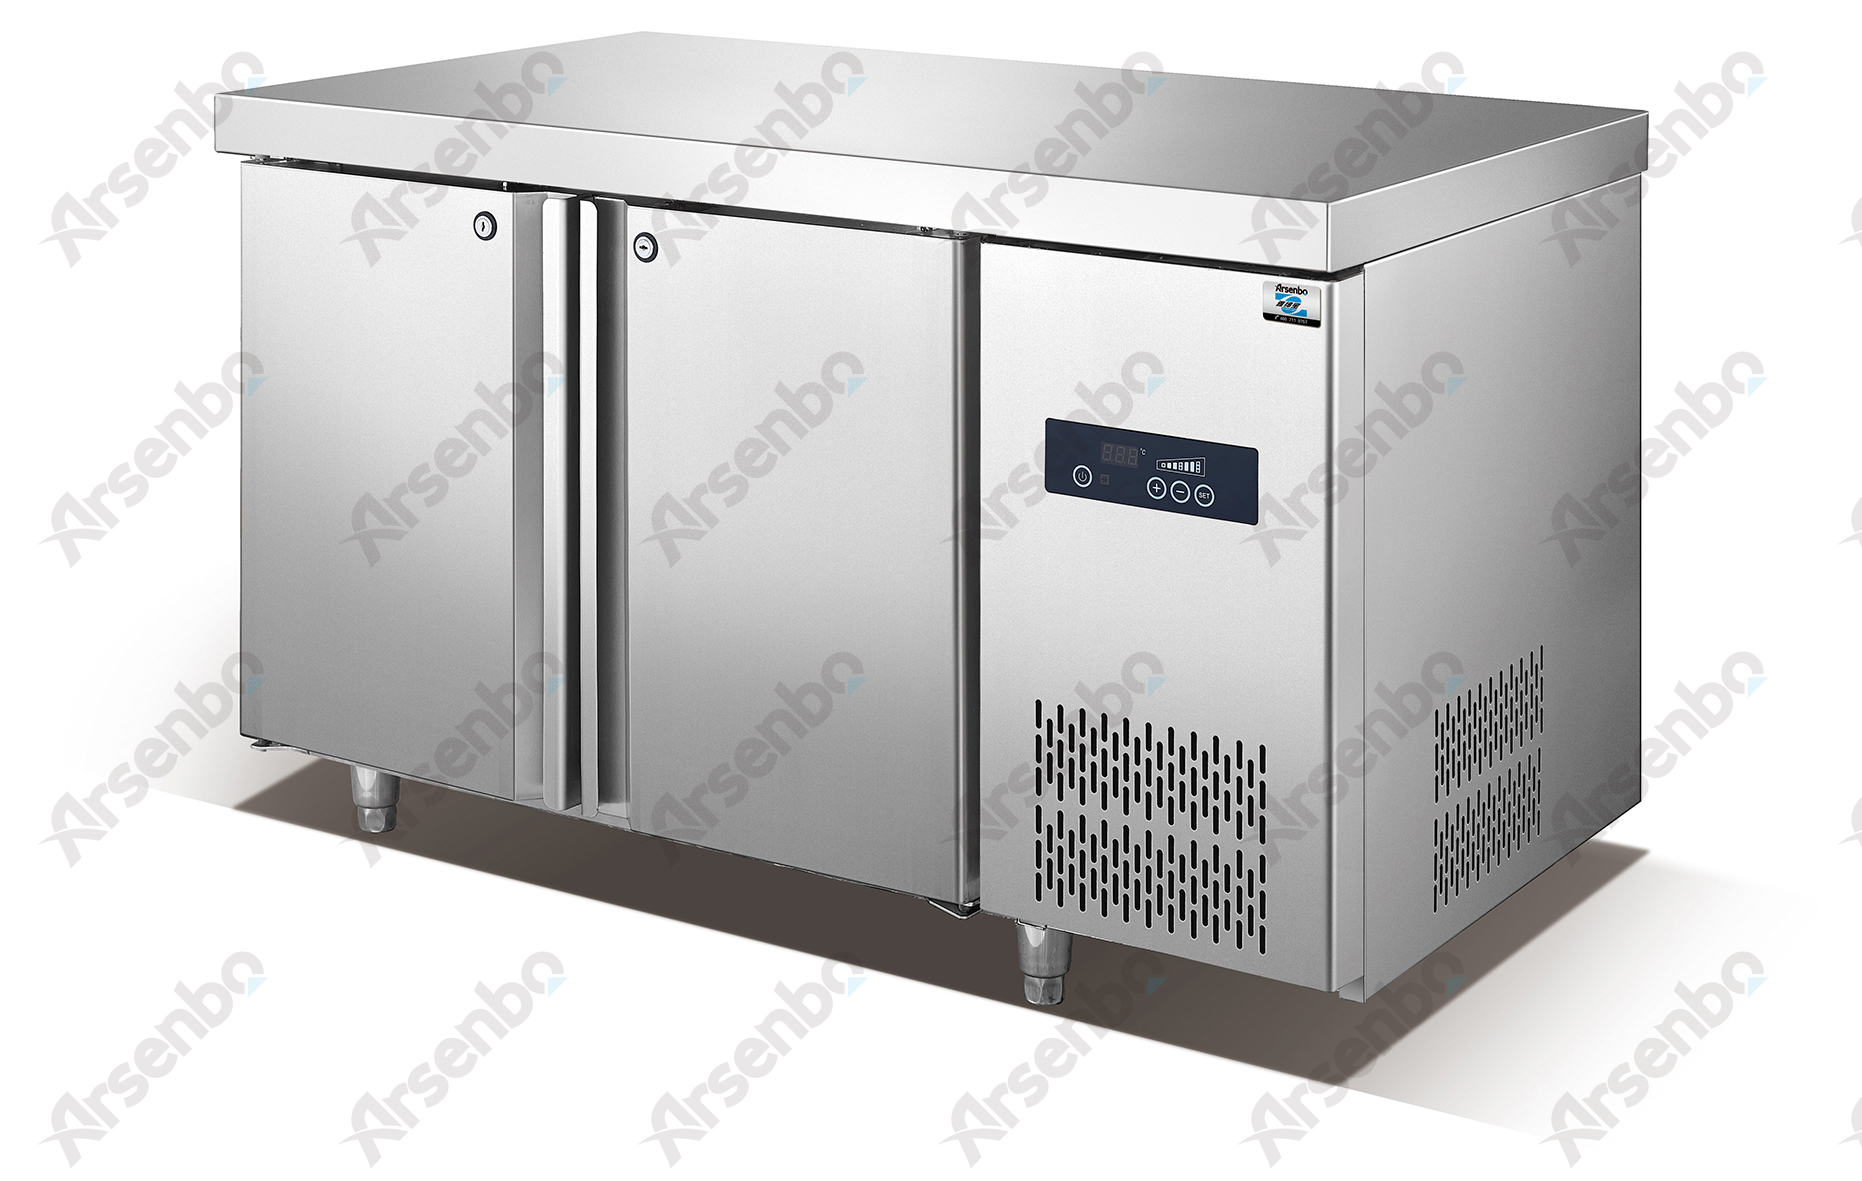 供应定制工作台/冷藏平台冷柜/进口冷柜价格/不锈钢冷柜图片/工作台维修